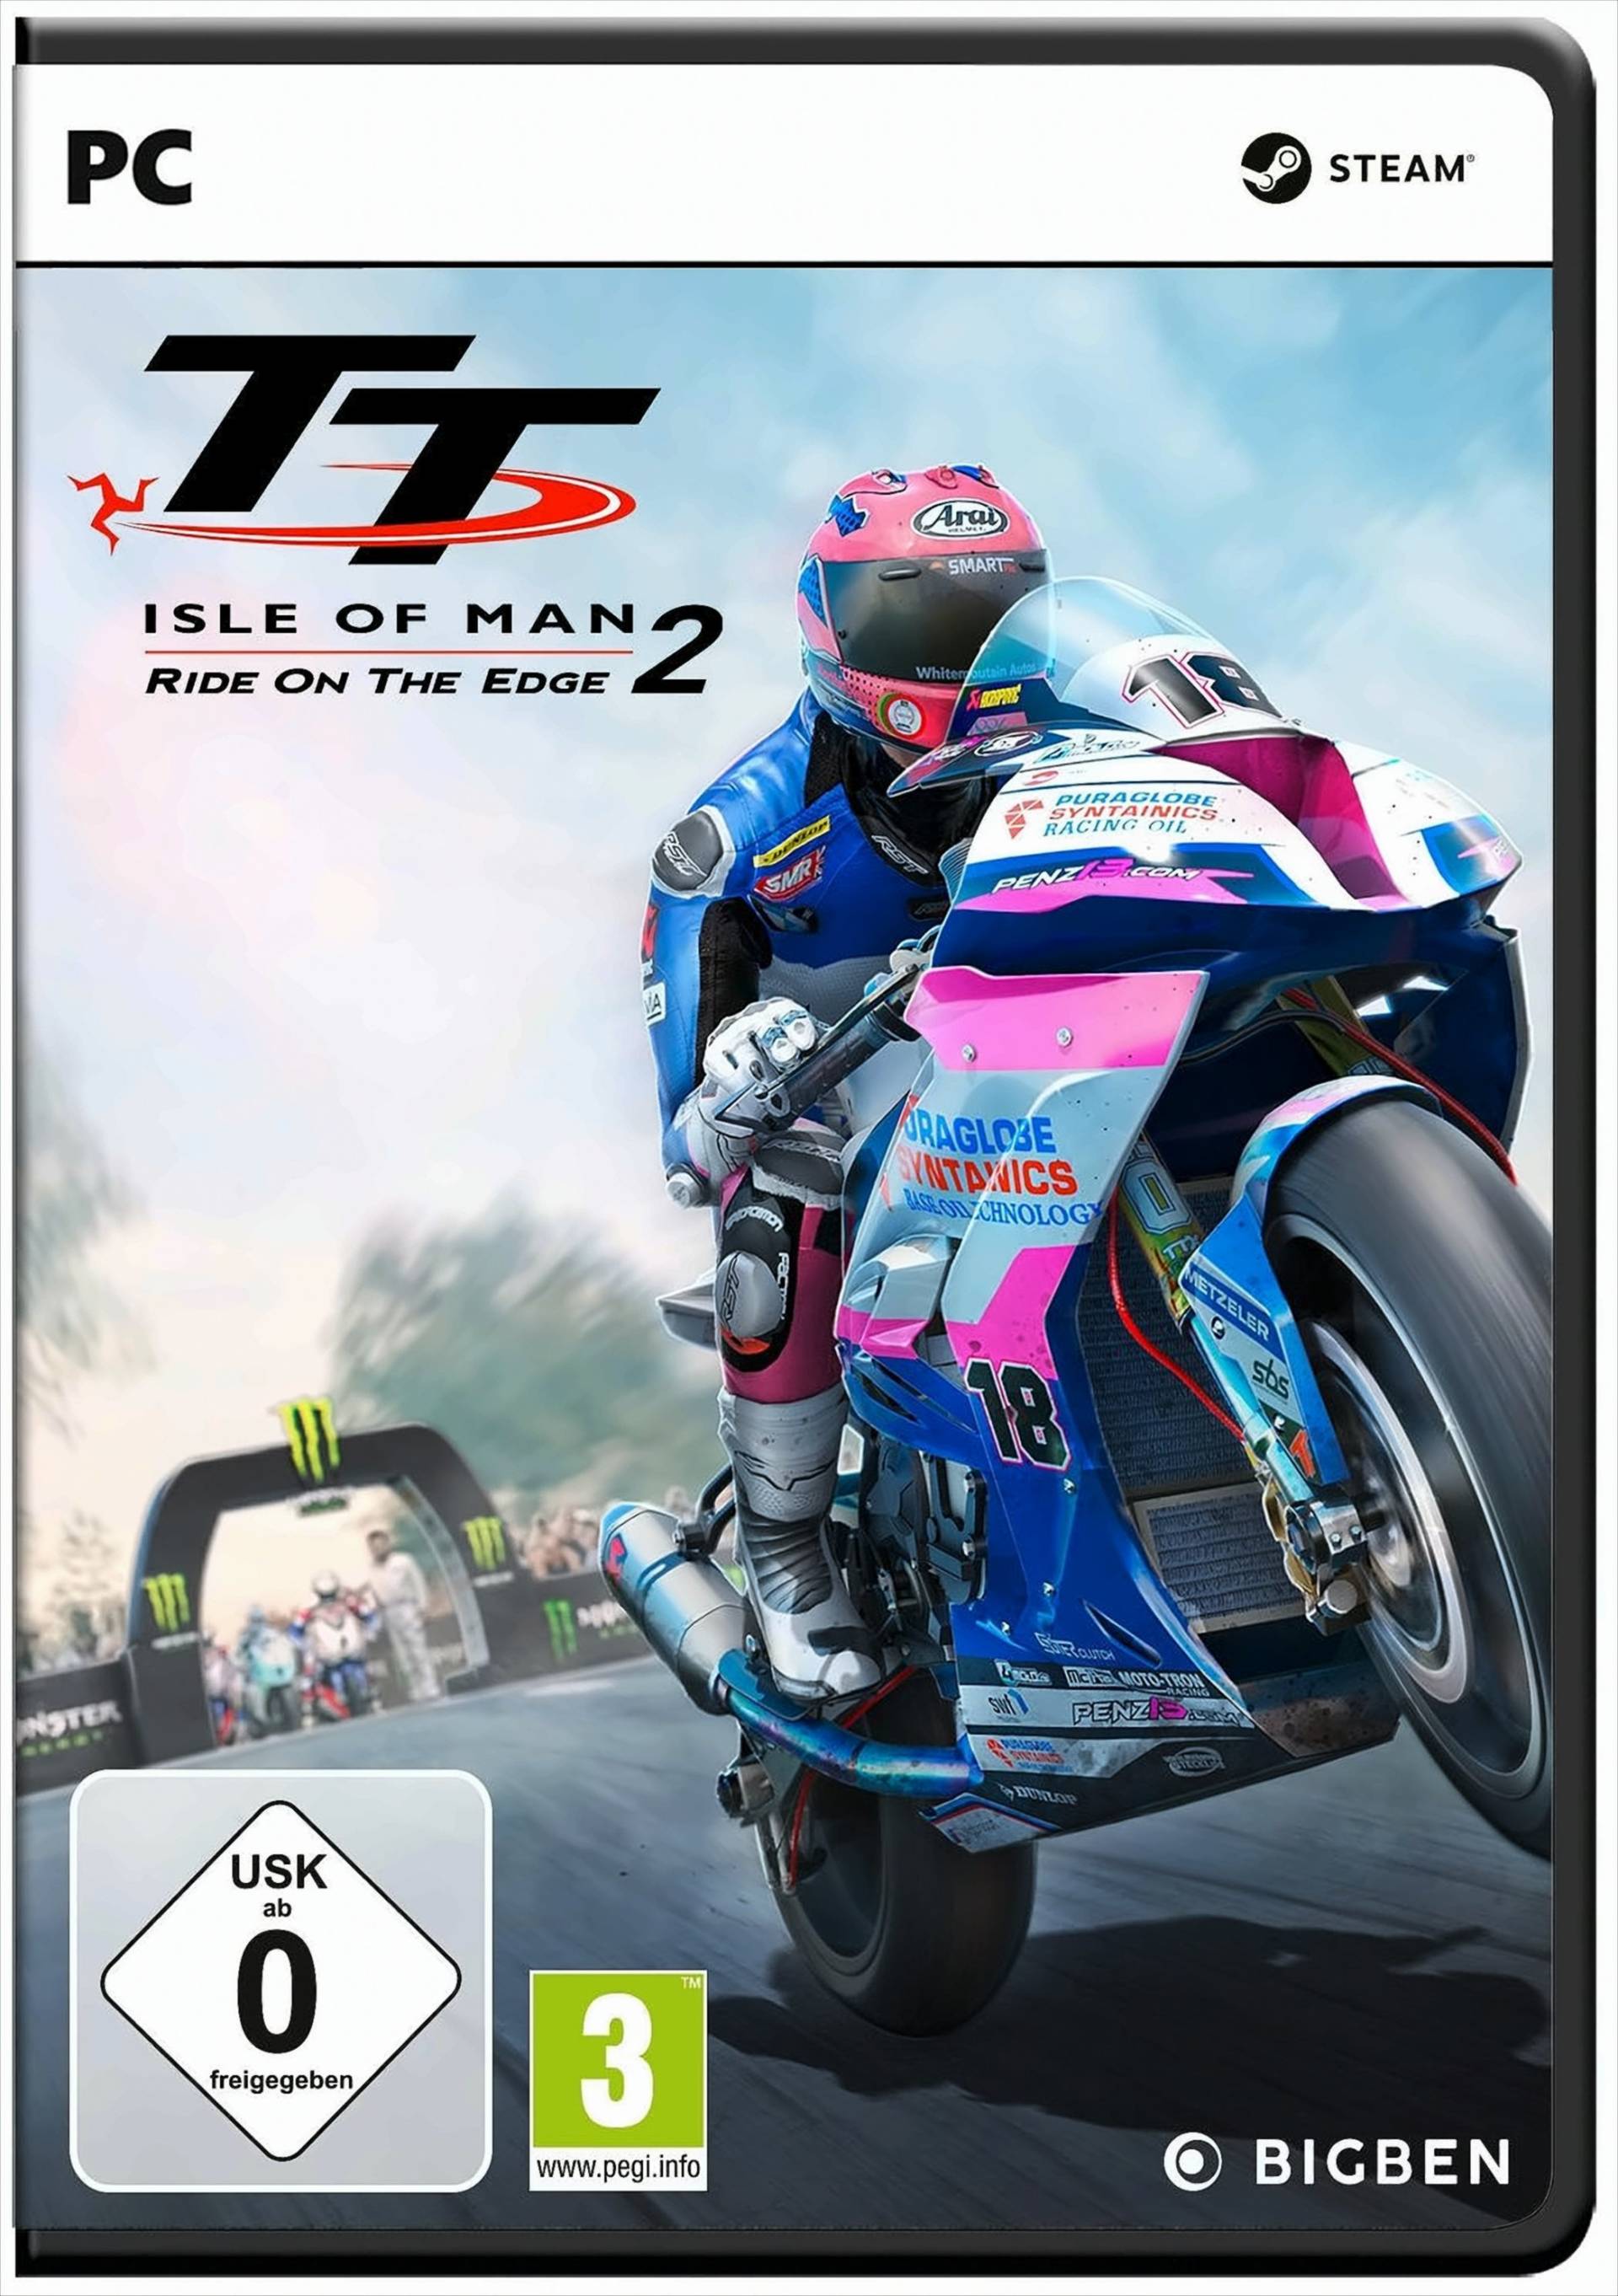 TT - Isle of Man 2 PC von Bigben Interactive